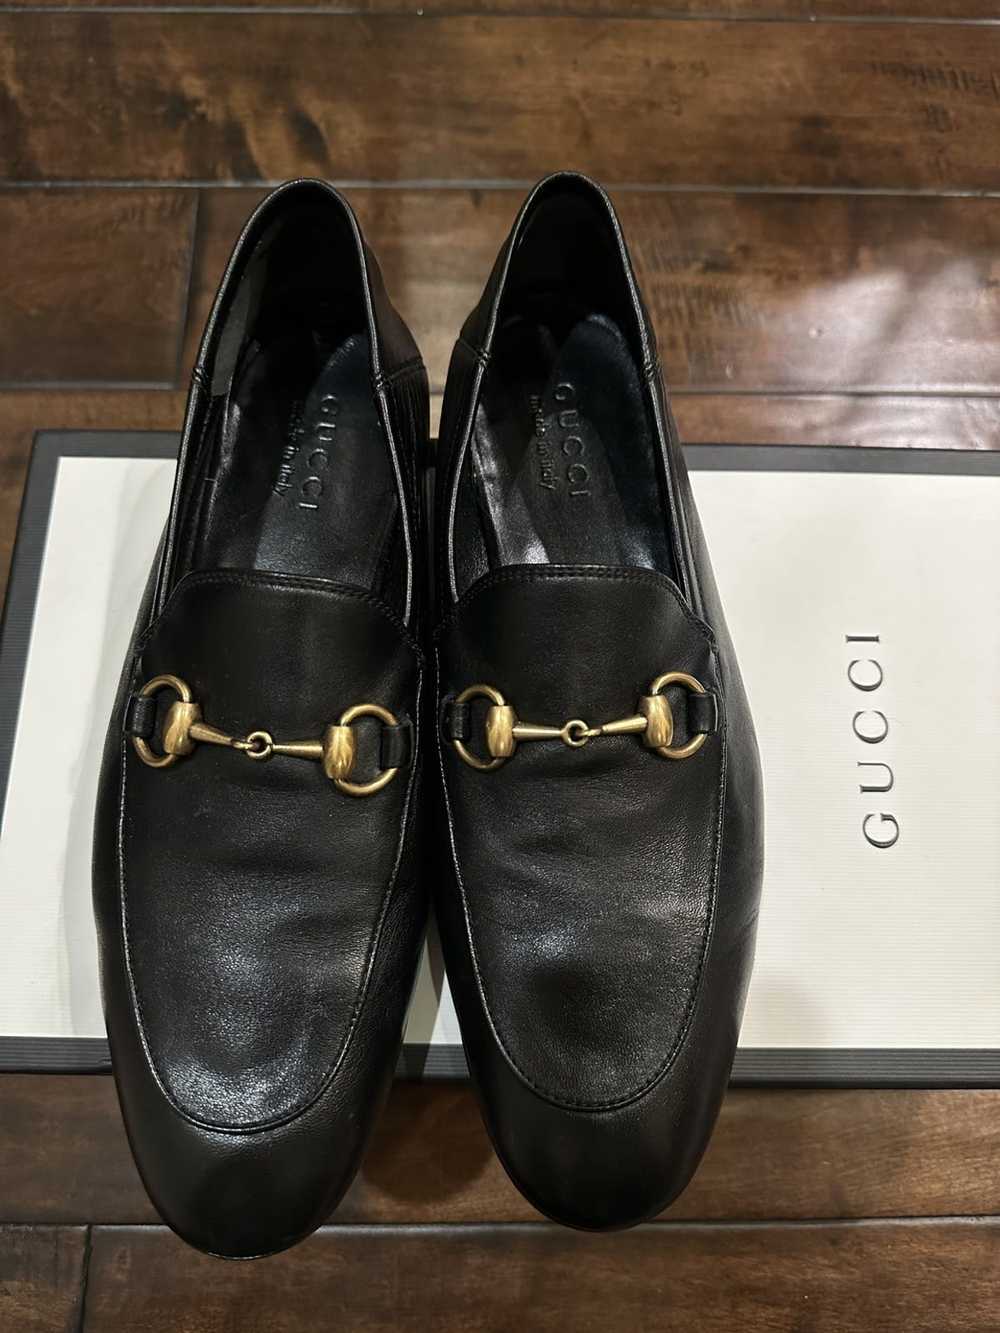 Gucci Gucci brixton loafer - image 1